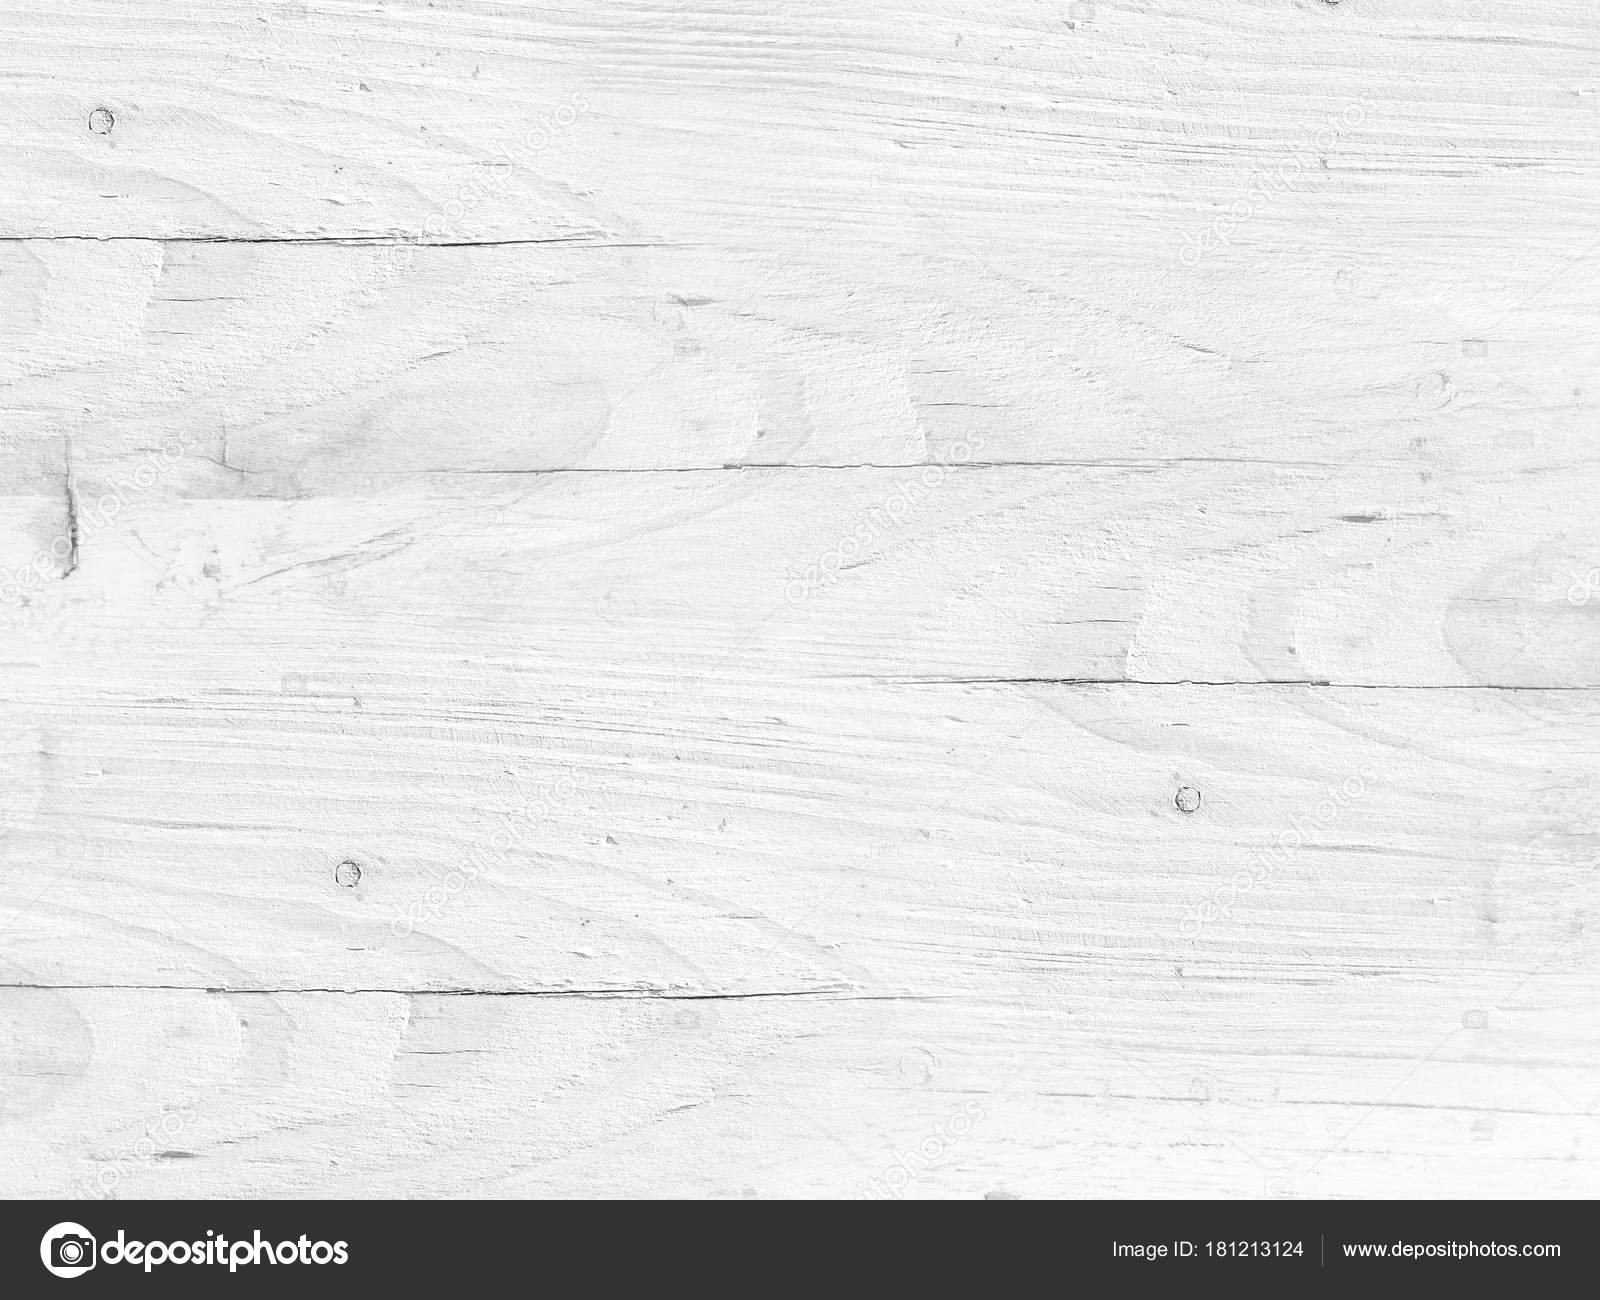 Nền gỗ trắng kết hợp với mặt sàn gỗ màu xám nhạt mềm mại sẽ mang lại cảm giác tinh tế và đầy phong cách cho không gian. Sự kết hợp này không chỉ đơn thuần là màu sắc, mà còn thể hiện sự tinh tế trong việc sắp xếp mọi thứ trong không gian của bạn.